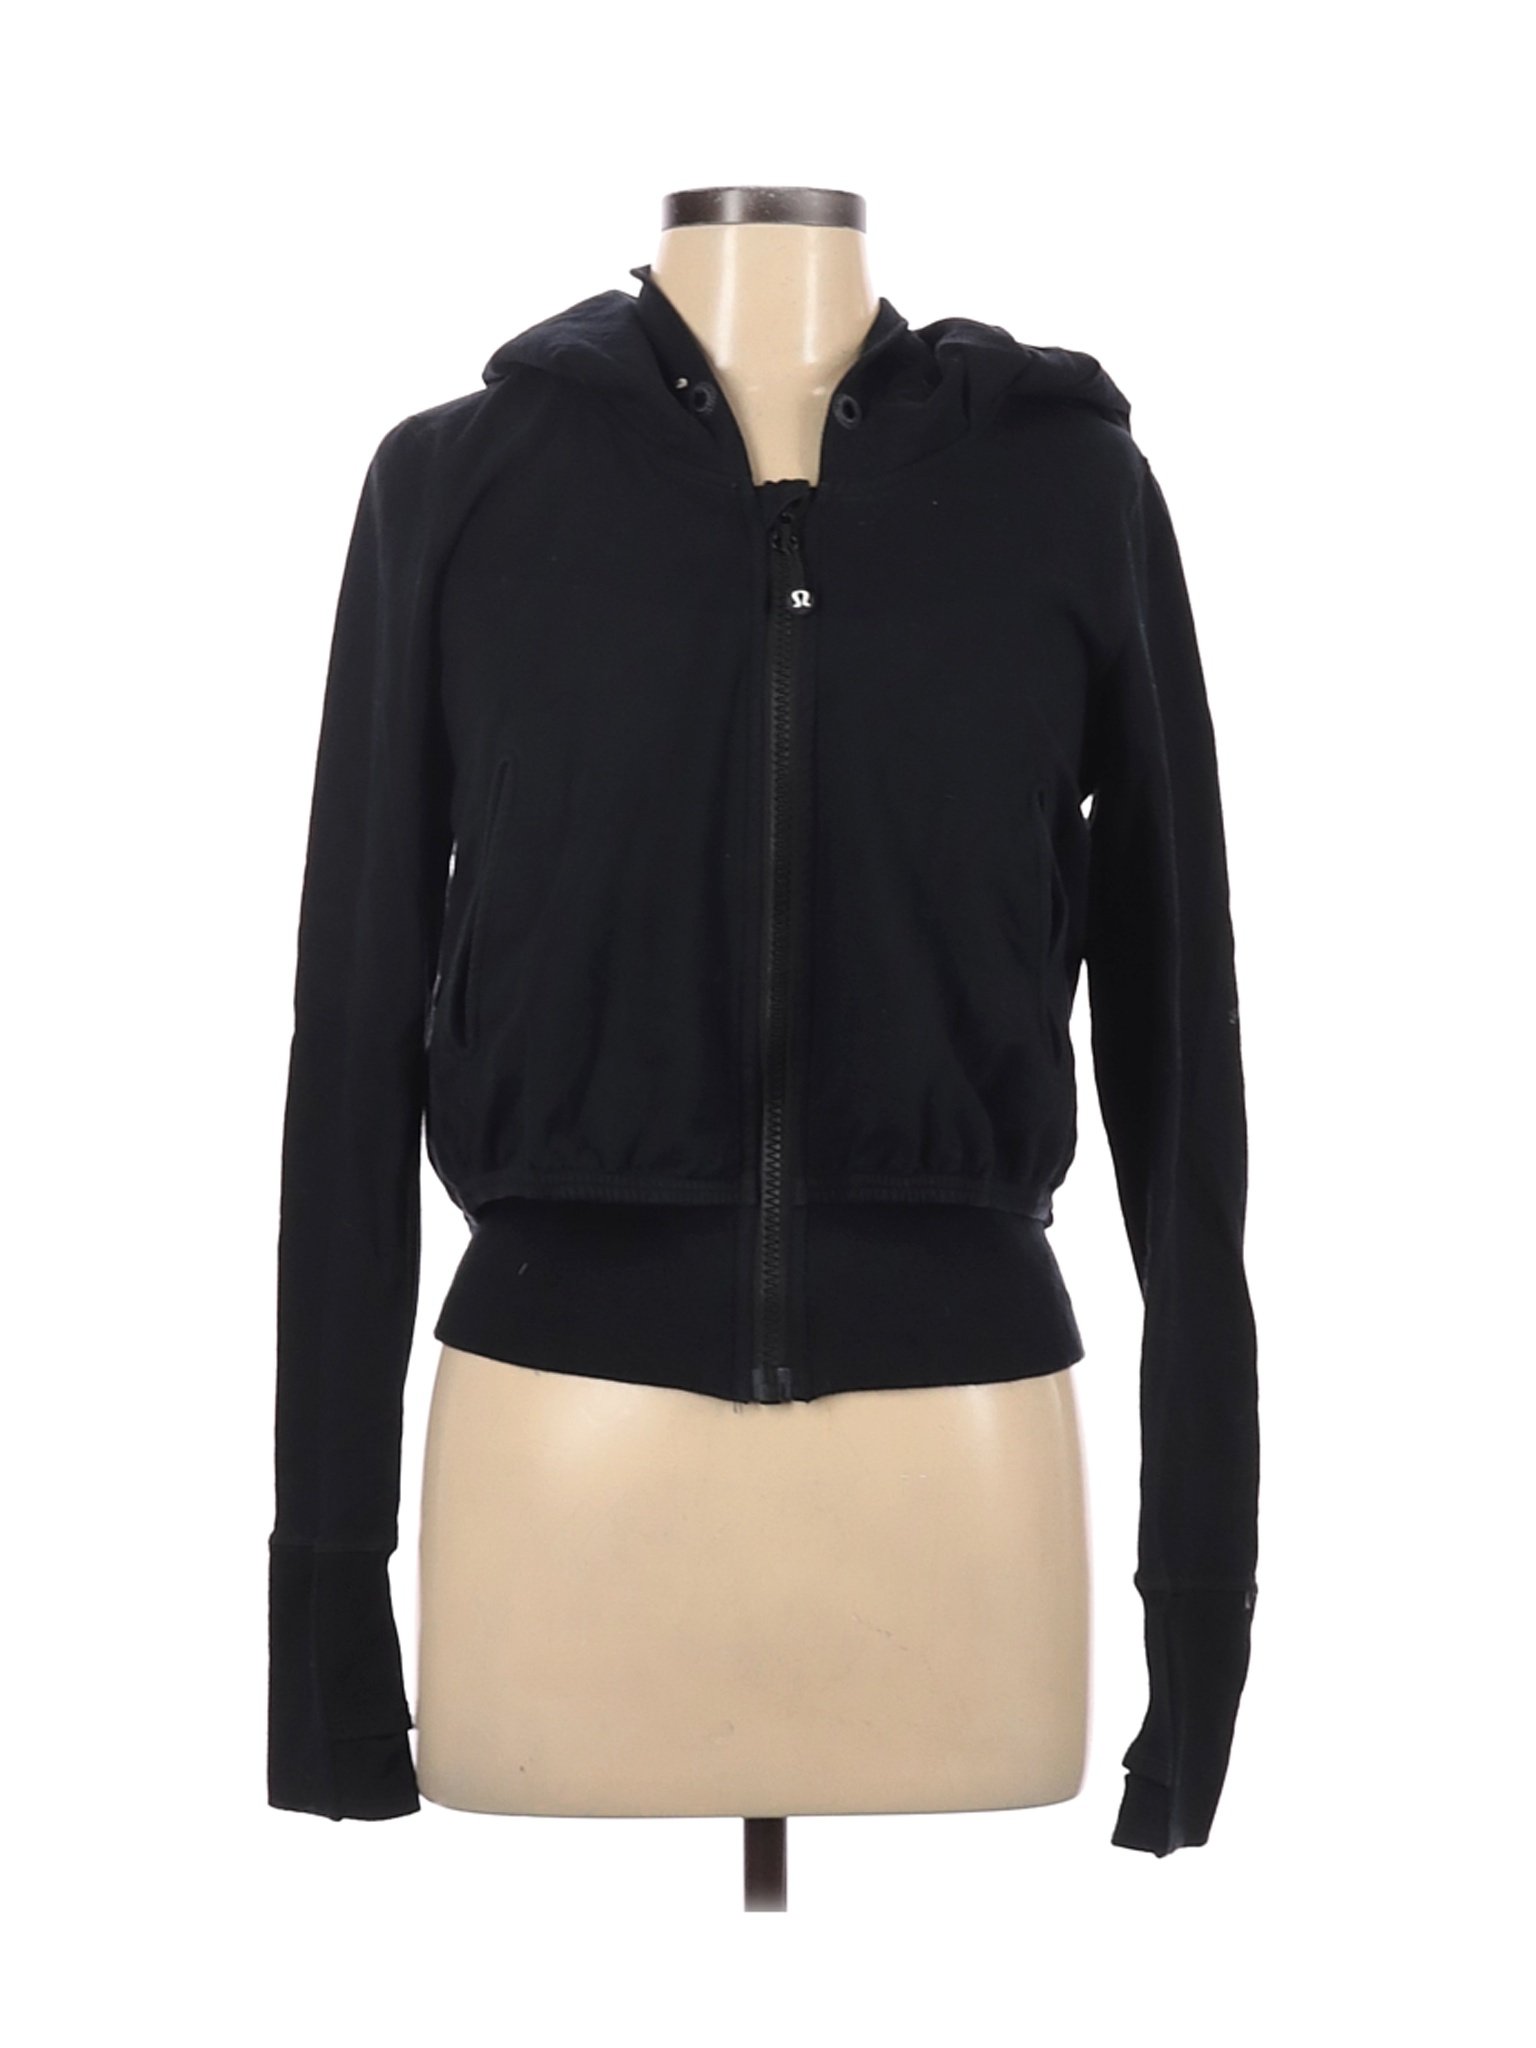 lululemon women's jackets ebay